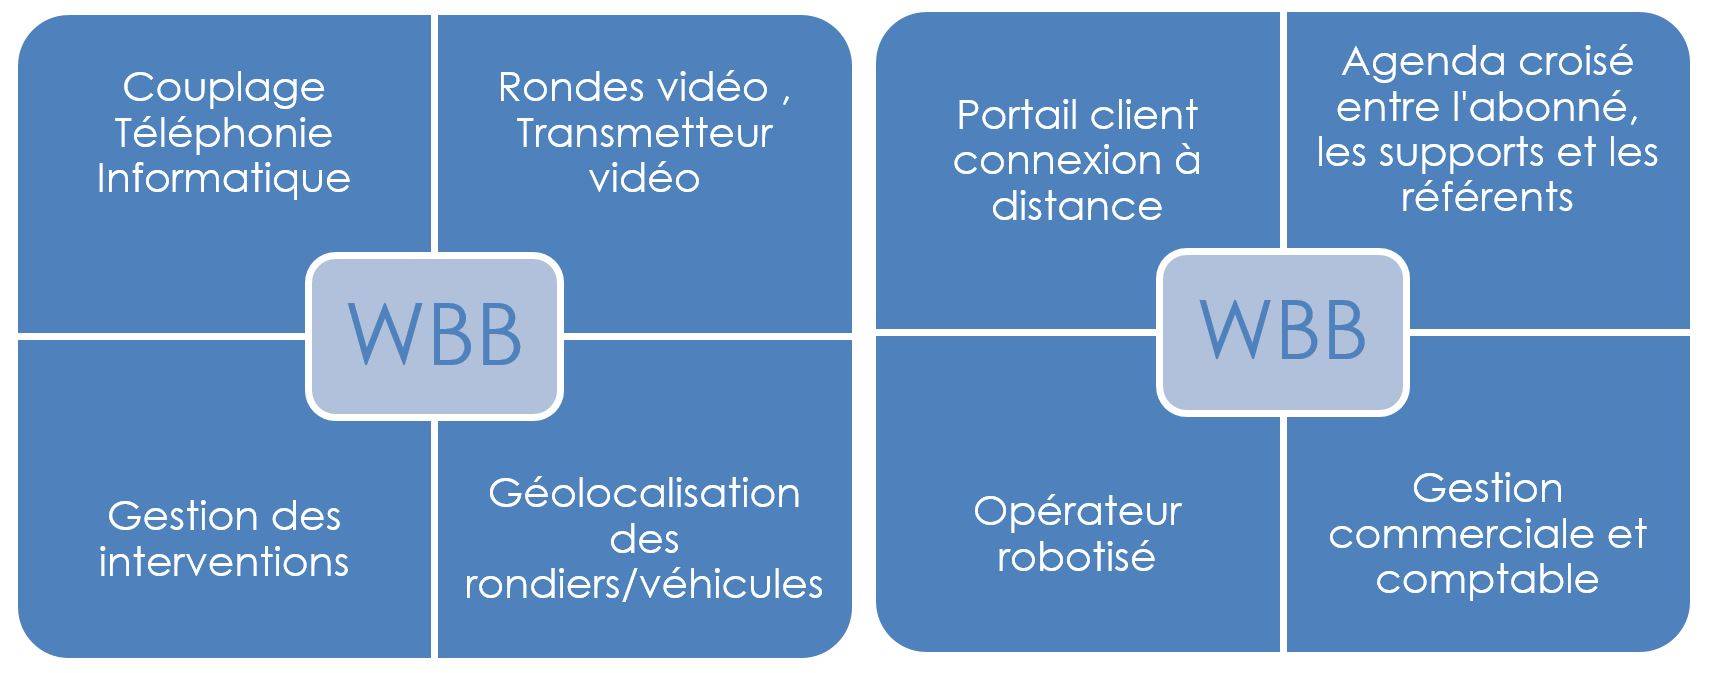 CTI - ronde vidéo - Géolocalisation - Gestion commerciale